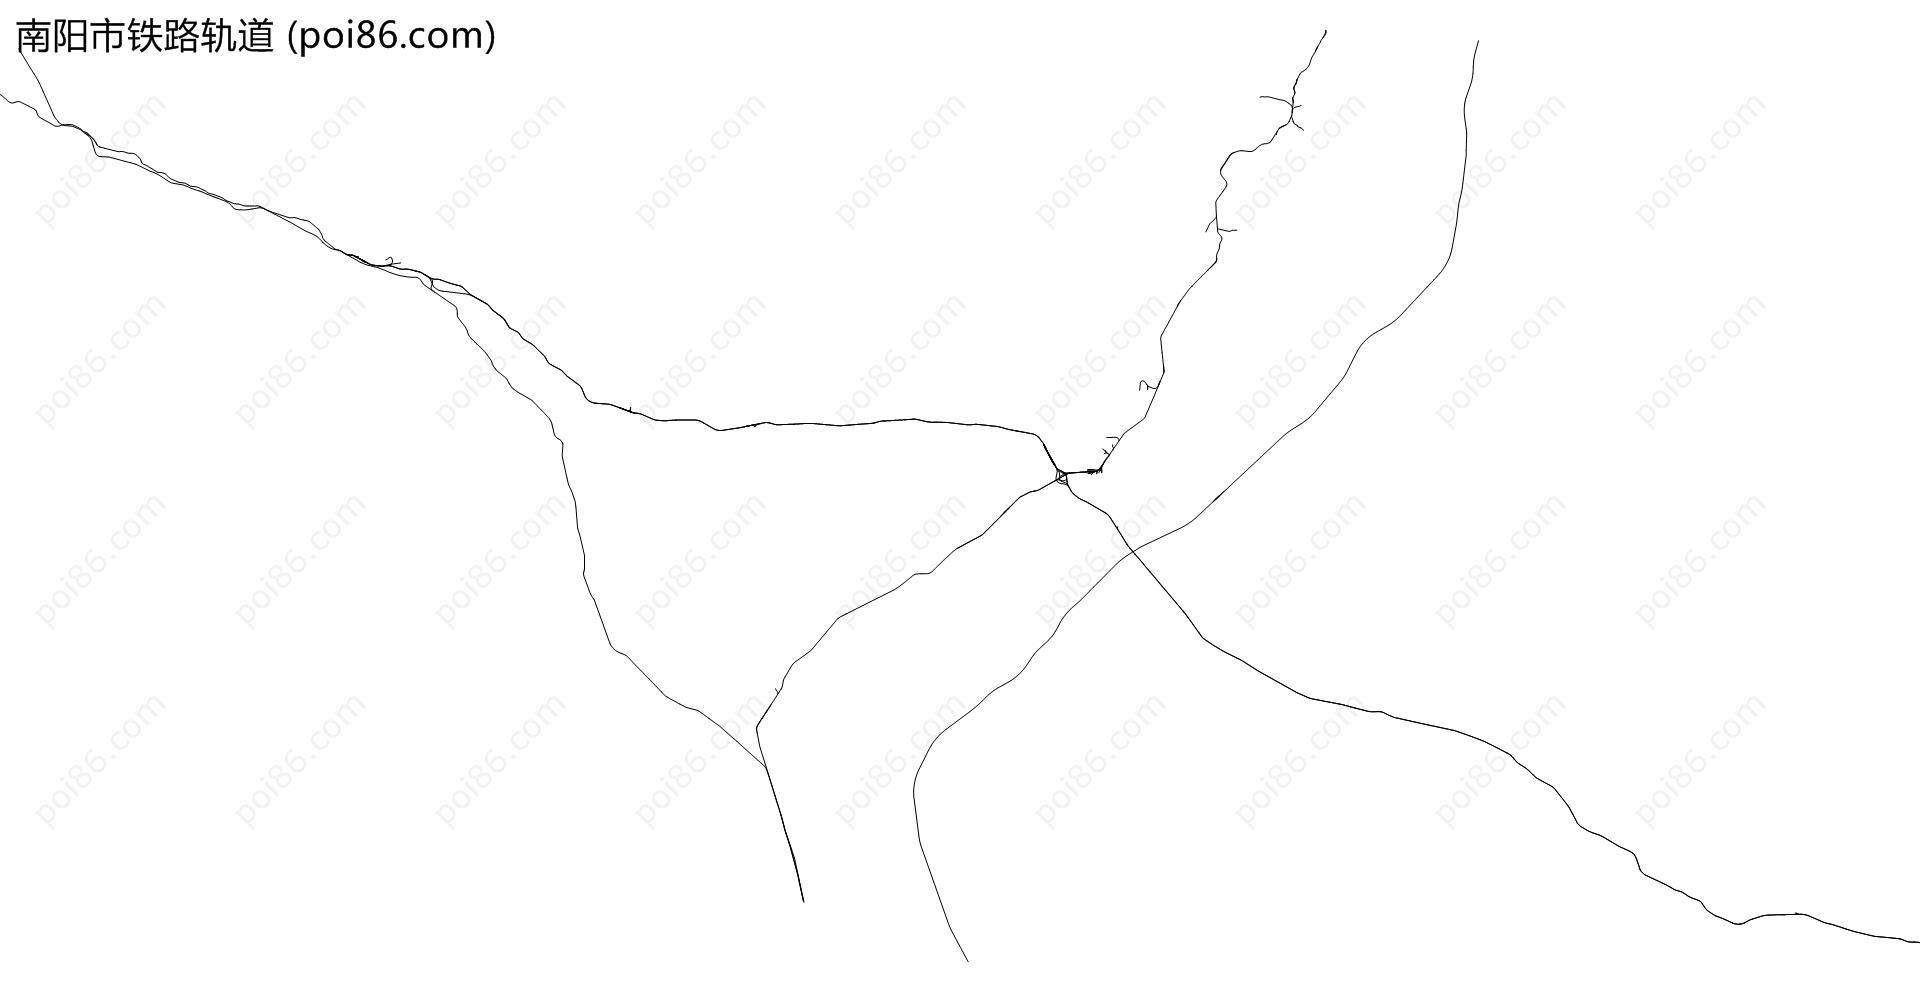 南阳市铁路轨道地图